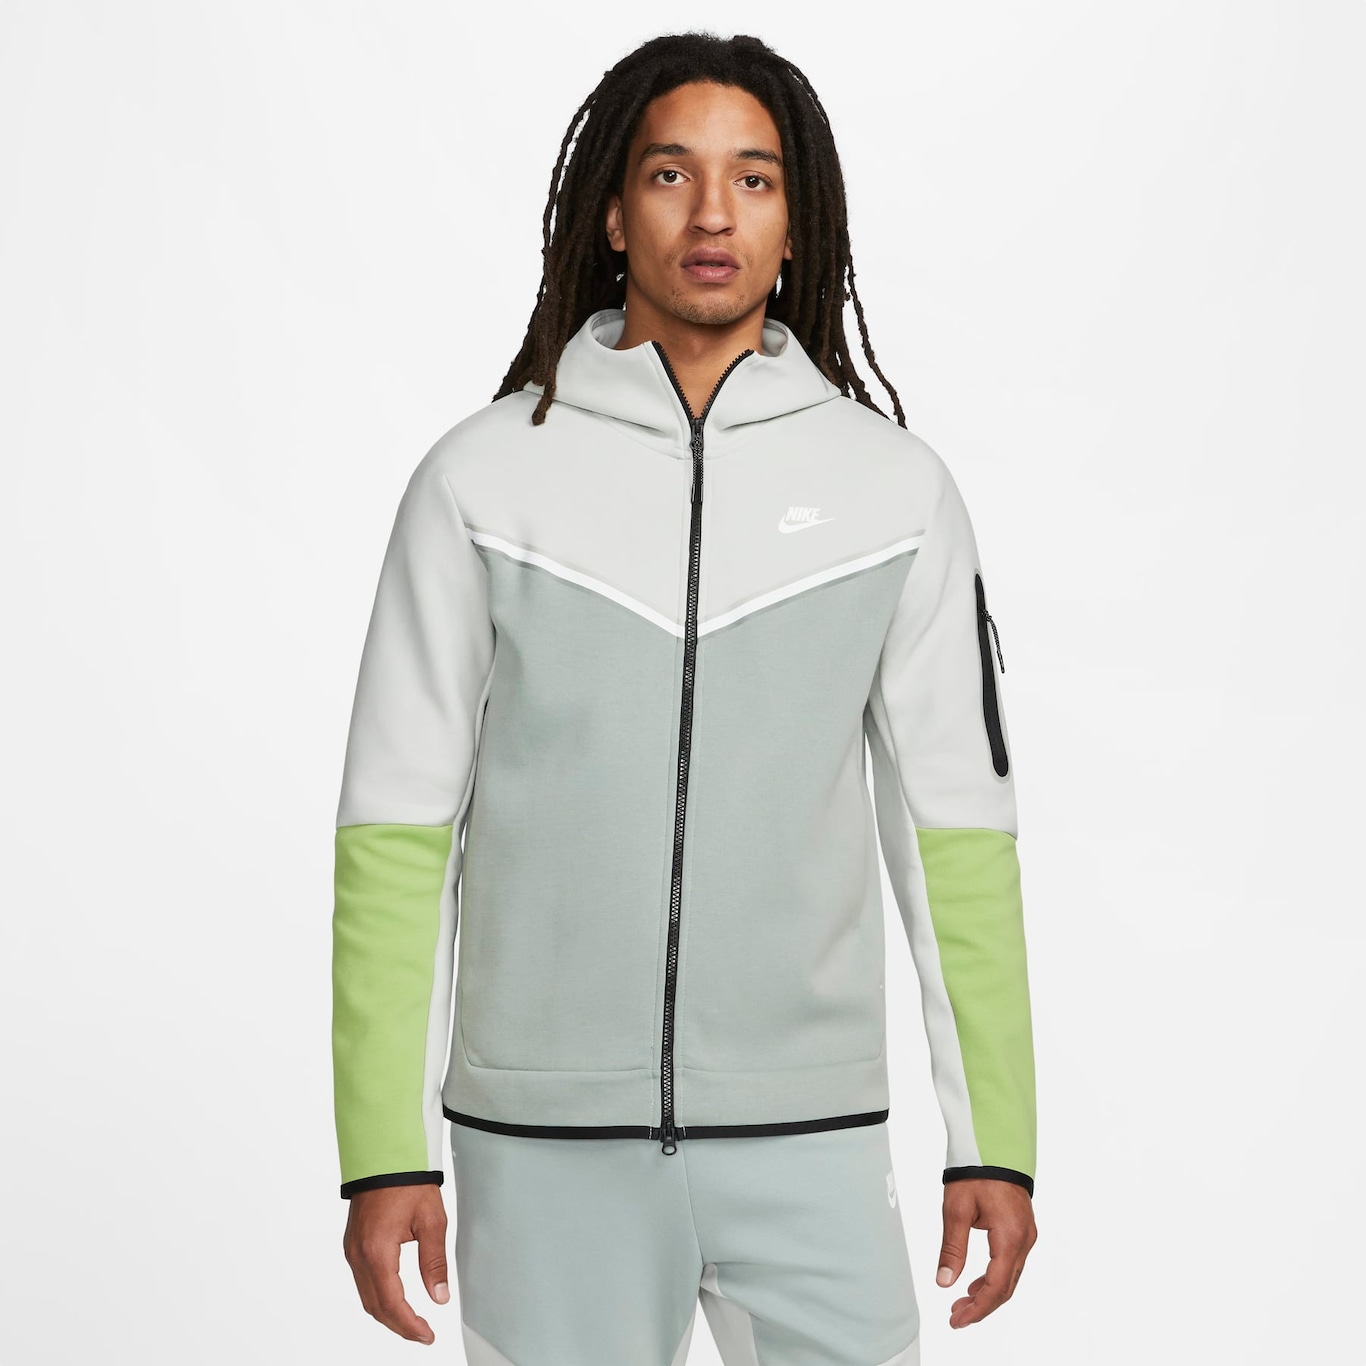 Oferta de Jaqueta Nike Sportswear Tech Fleece Masculina - Nike - Just Do It